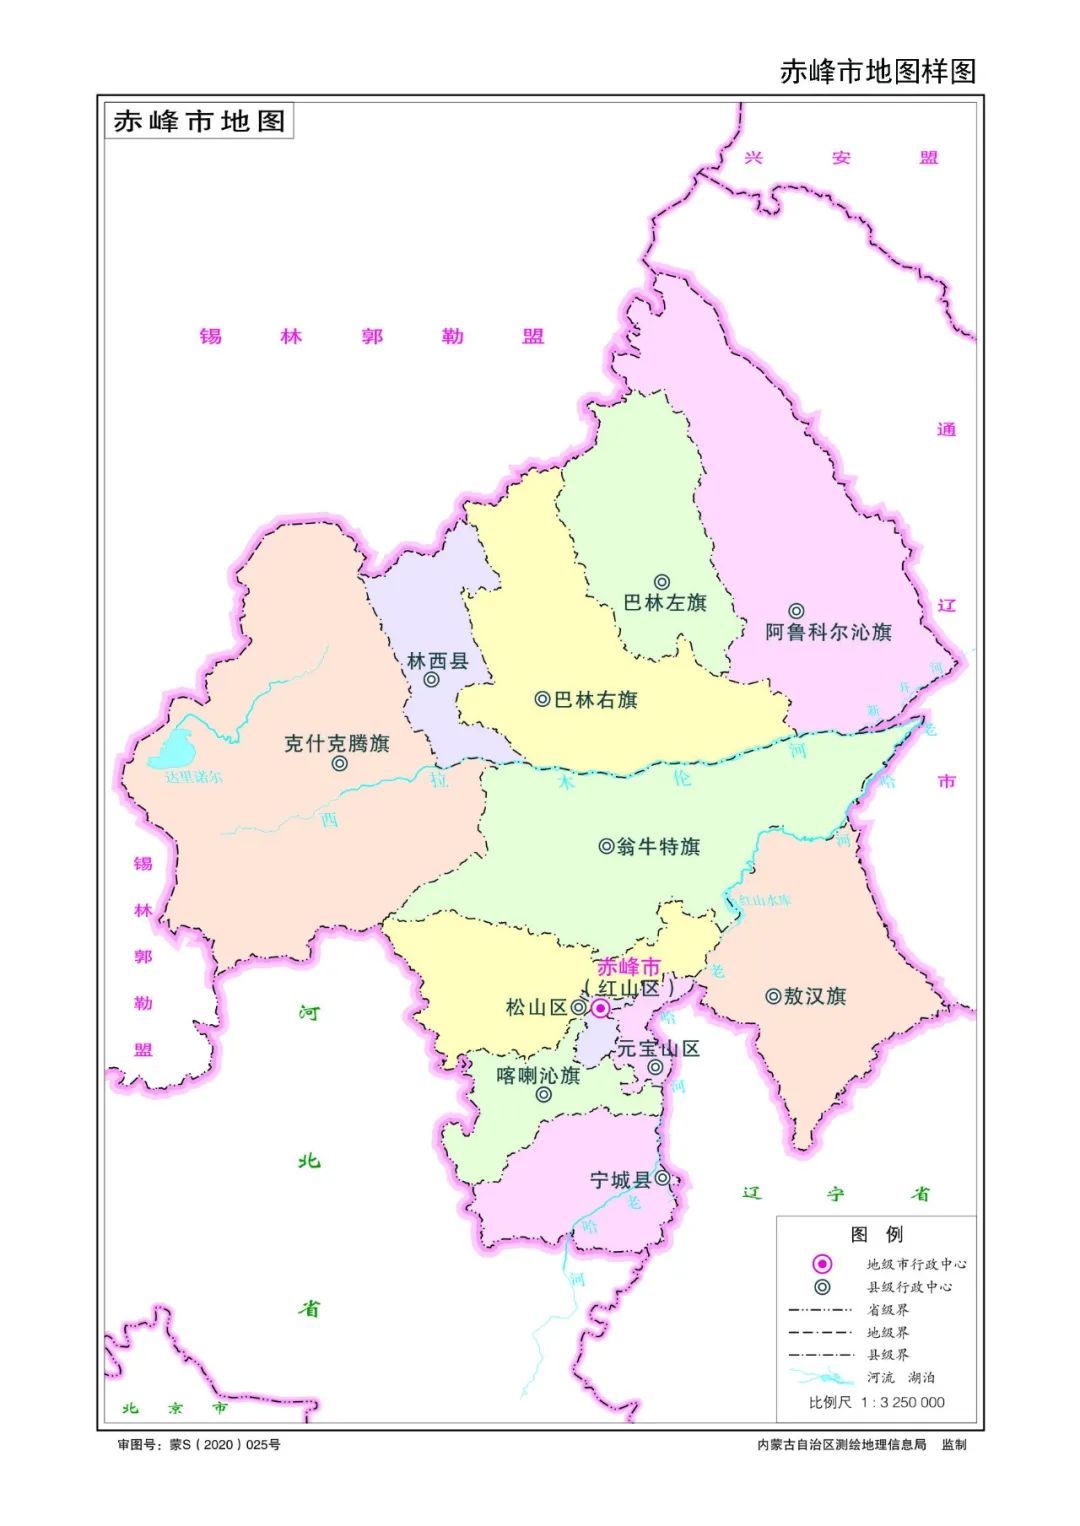 内蒙古地图查询内蒙古各盟市地图发布